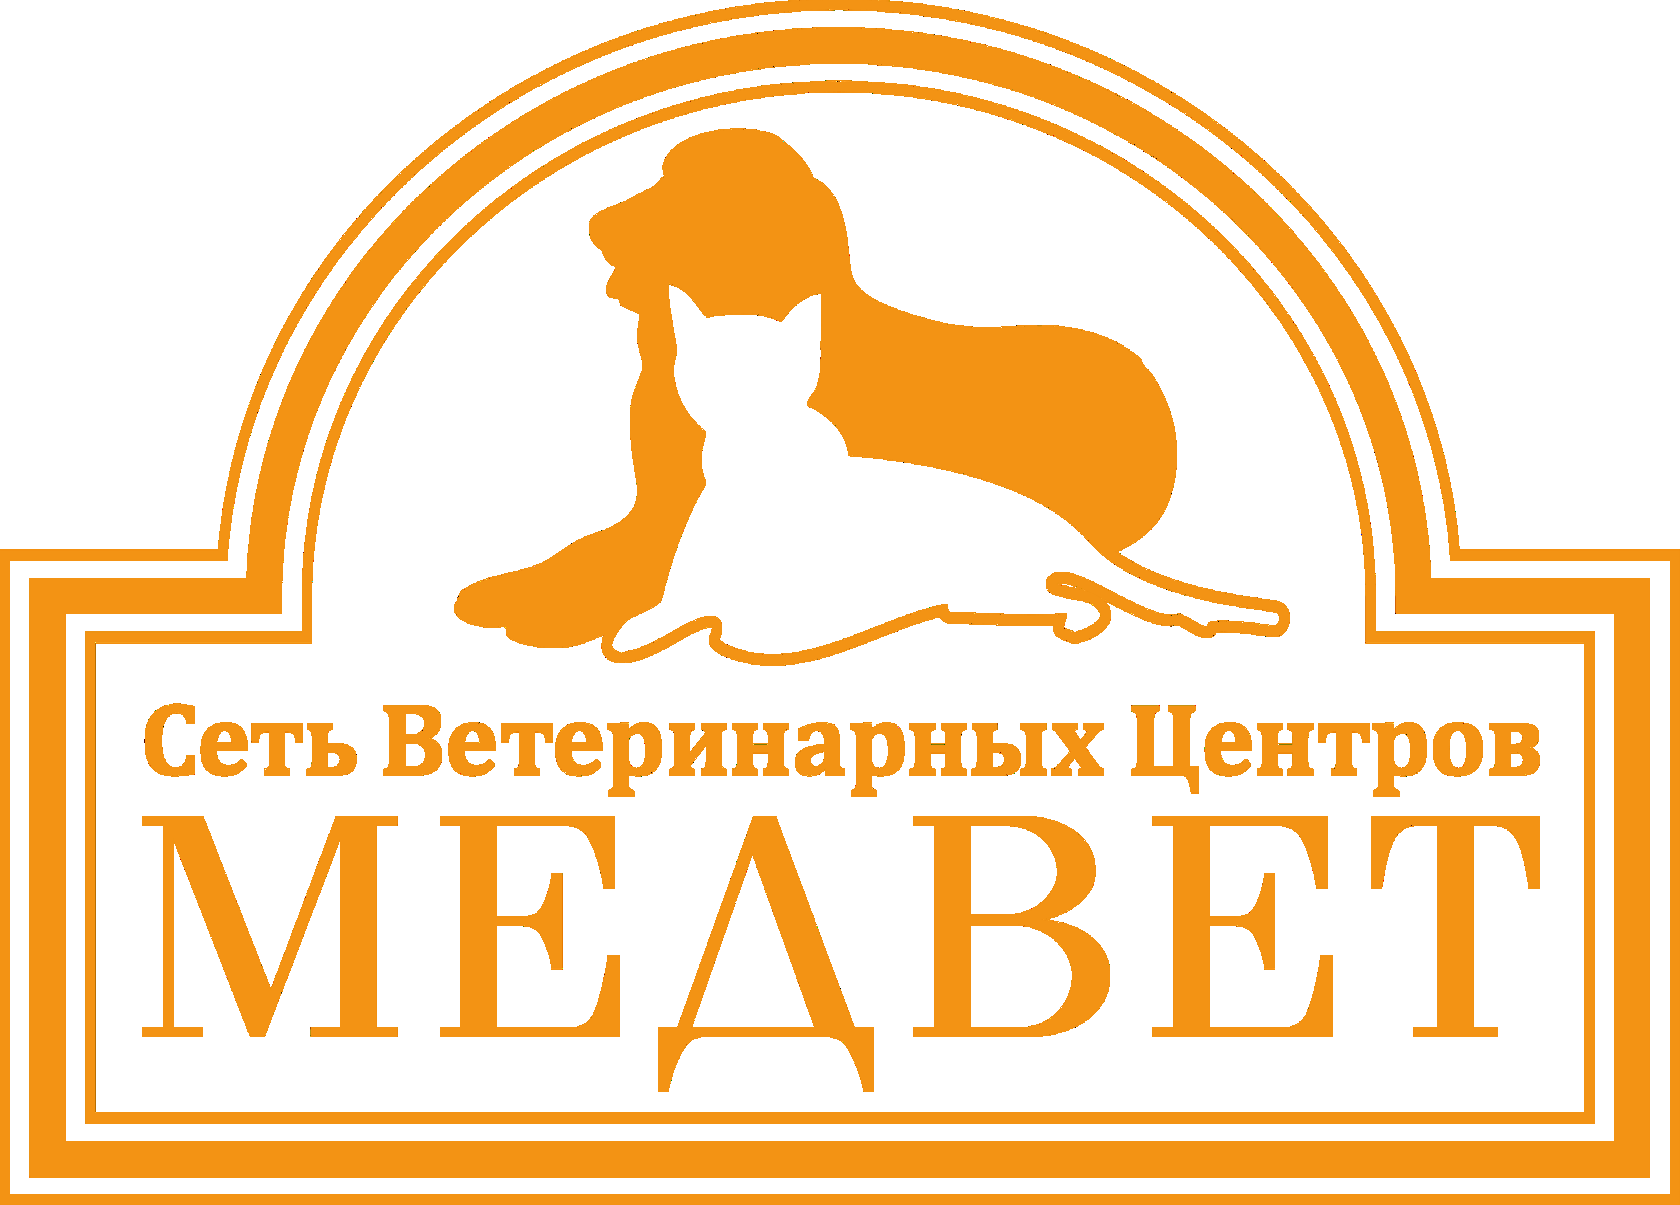 Медведь клиника ветеринарная Москва. МЕДВЕТ ветеринарная клиника Домодедово. Медвед Домодедово ветклиника. Логотип ветеринарной клиники. Клиника медвед